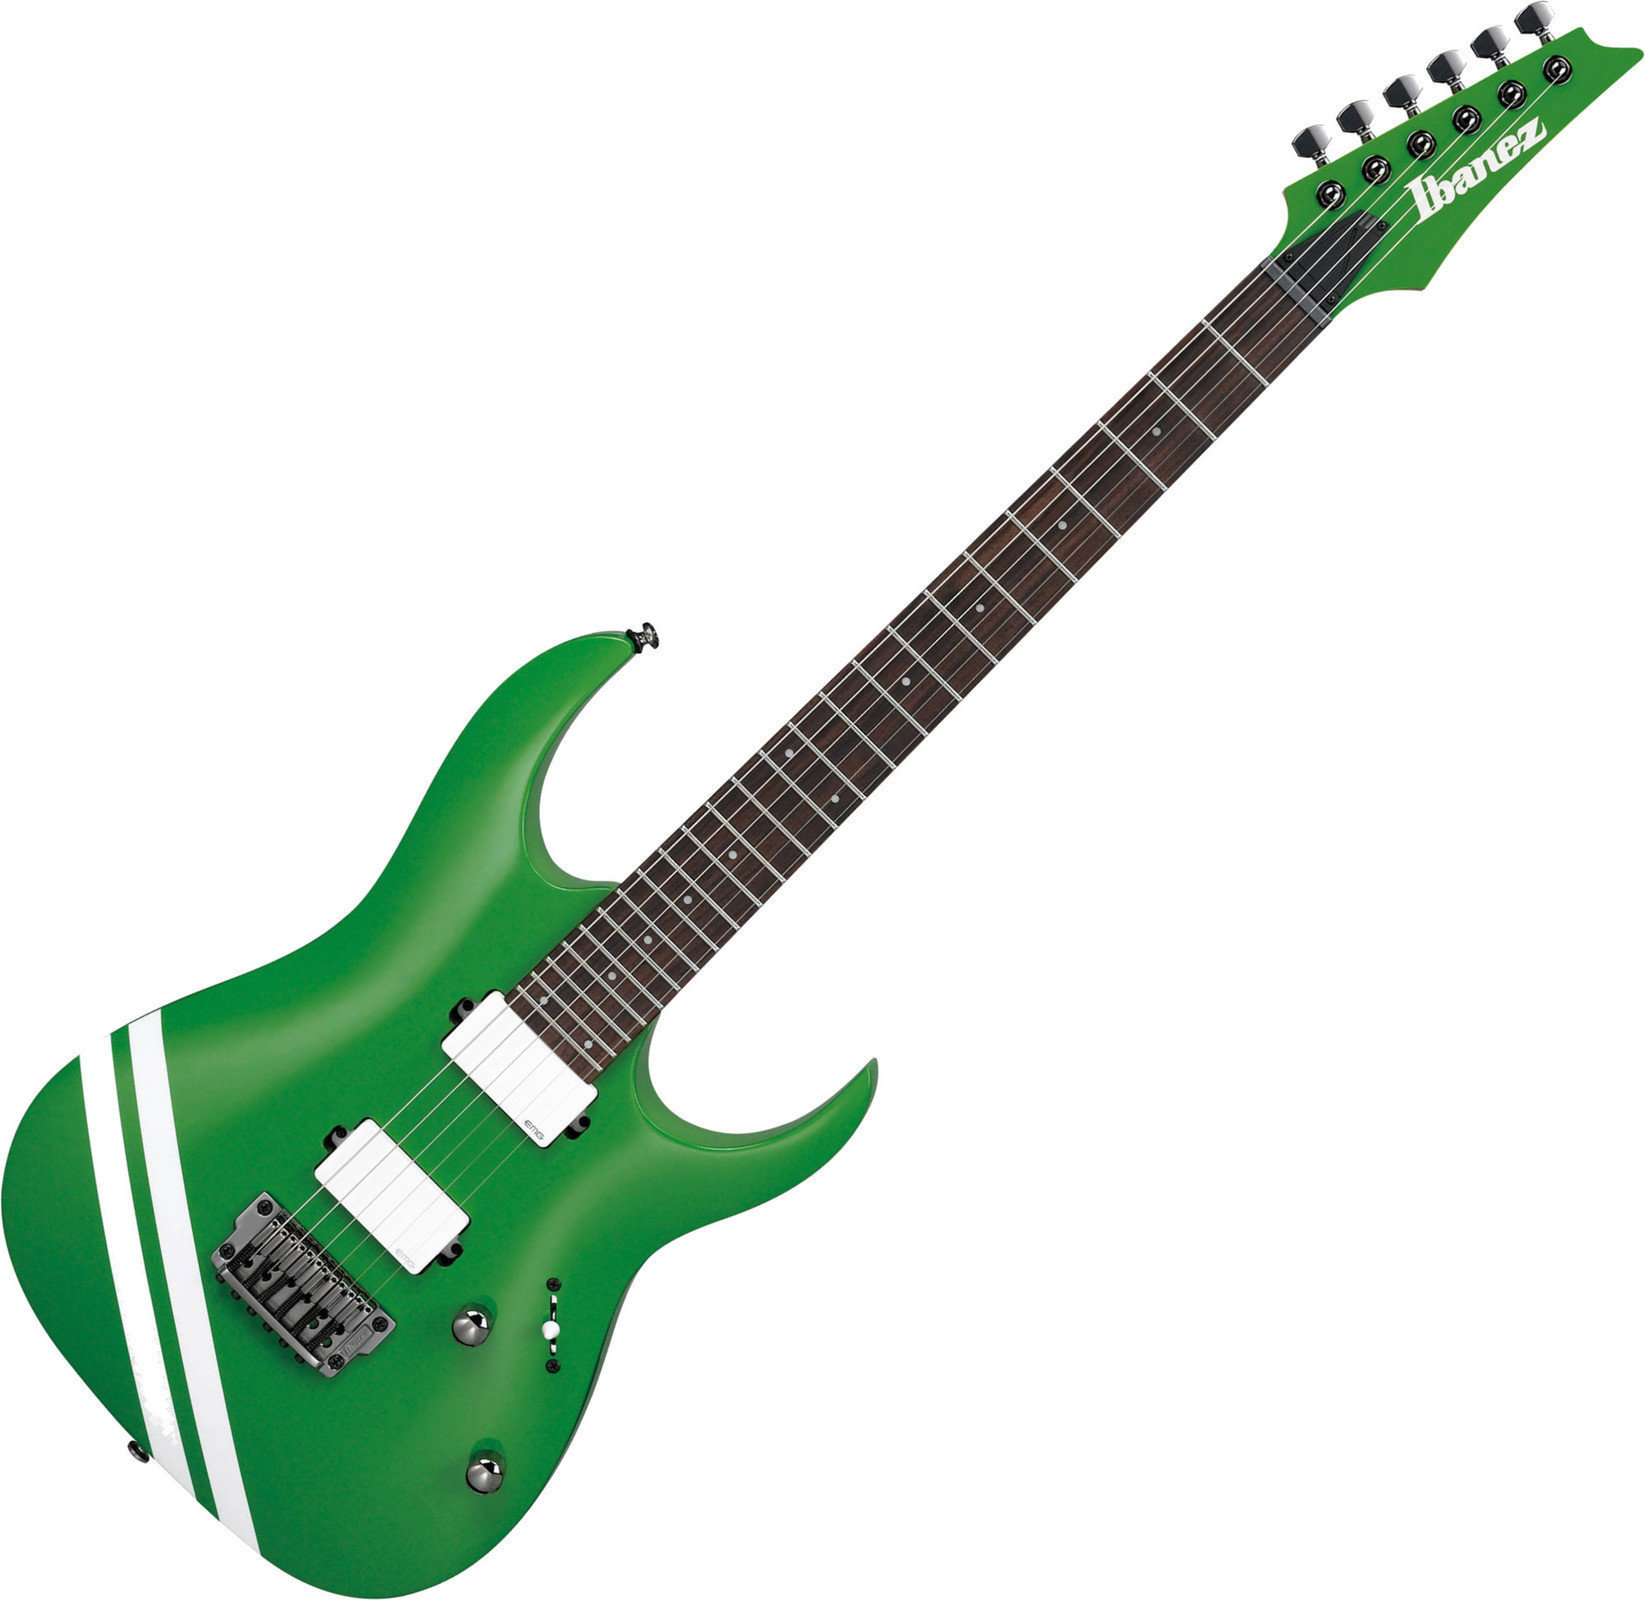 E-Gitarre Ibanez JBBM20 Grün